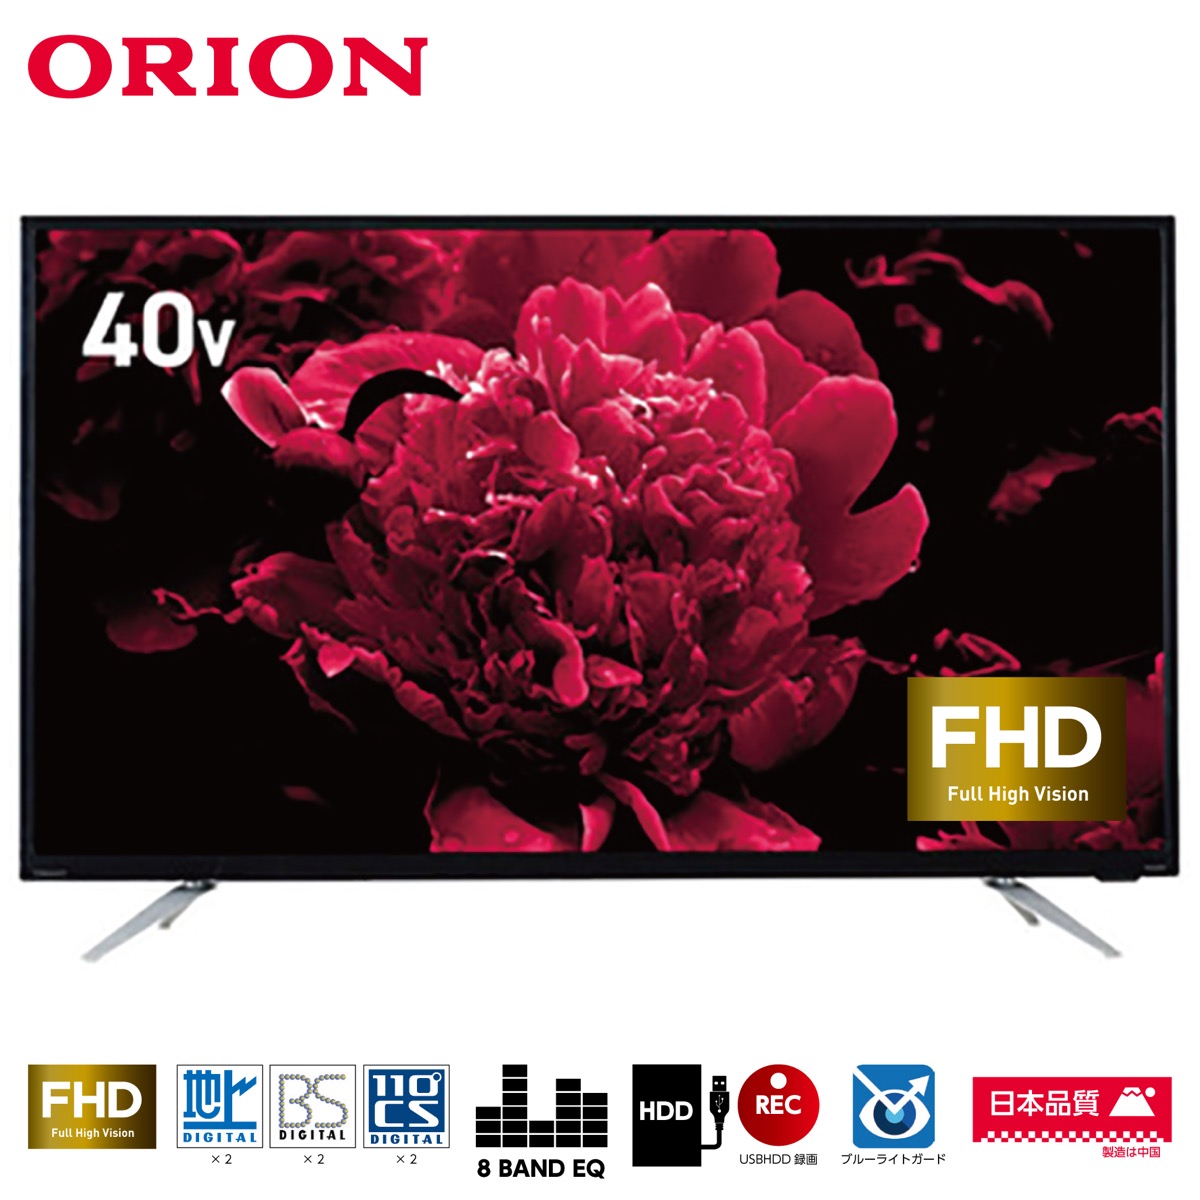 【楽天市場】ORION オリオン 40V型 地上 BS 110度CSデジタル フルハイビジョン LED液晶テレビ OL40WD100 フルHD